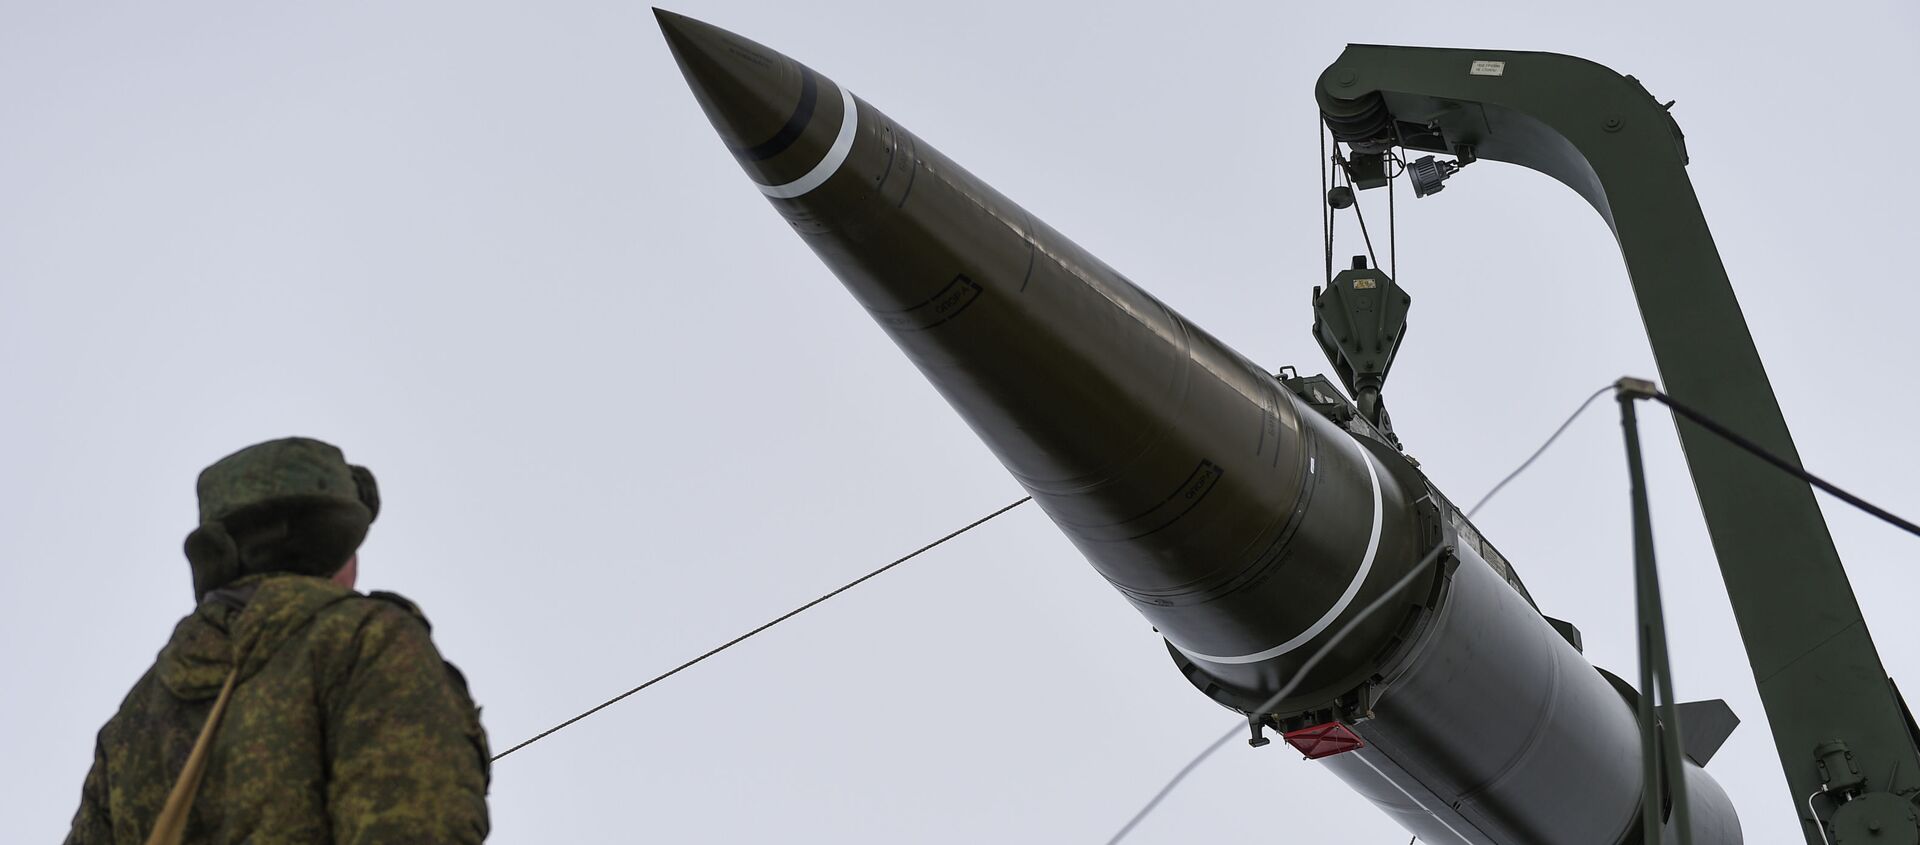 Подготовка к пуску ракеты комплекса Искандер-М с полигона Капустин Яр - Sputnik Южная Осетия, 1920, 25.02.2021